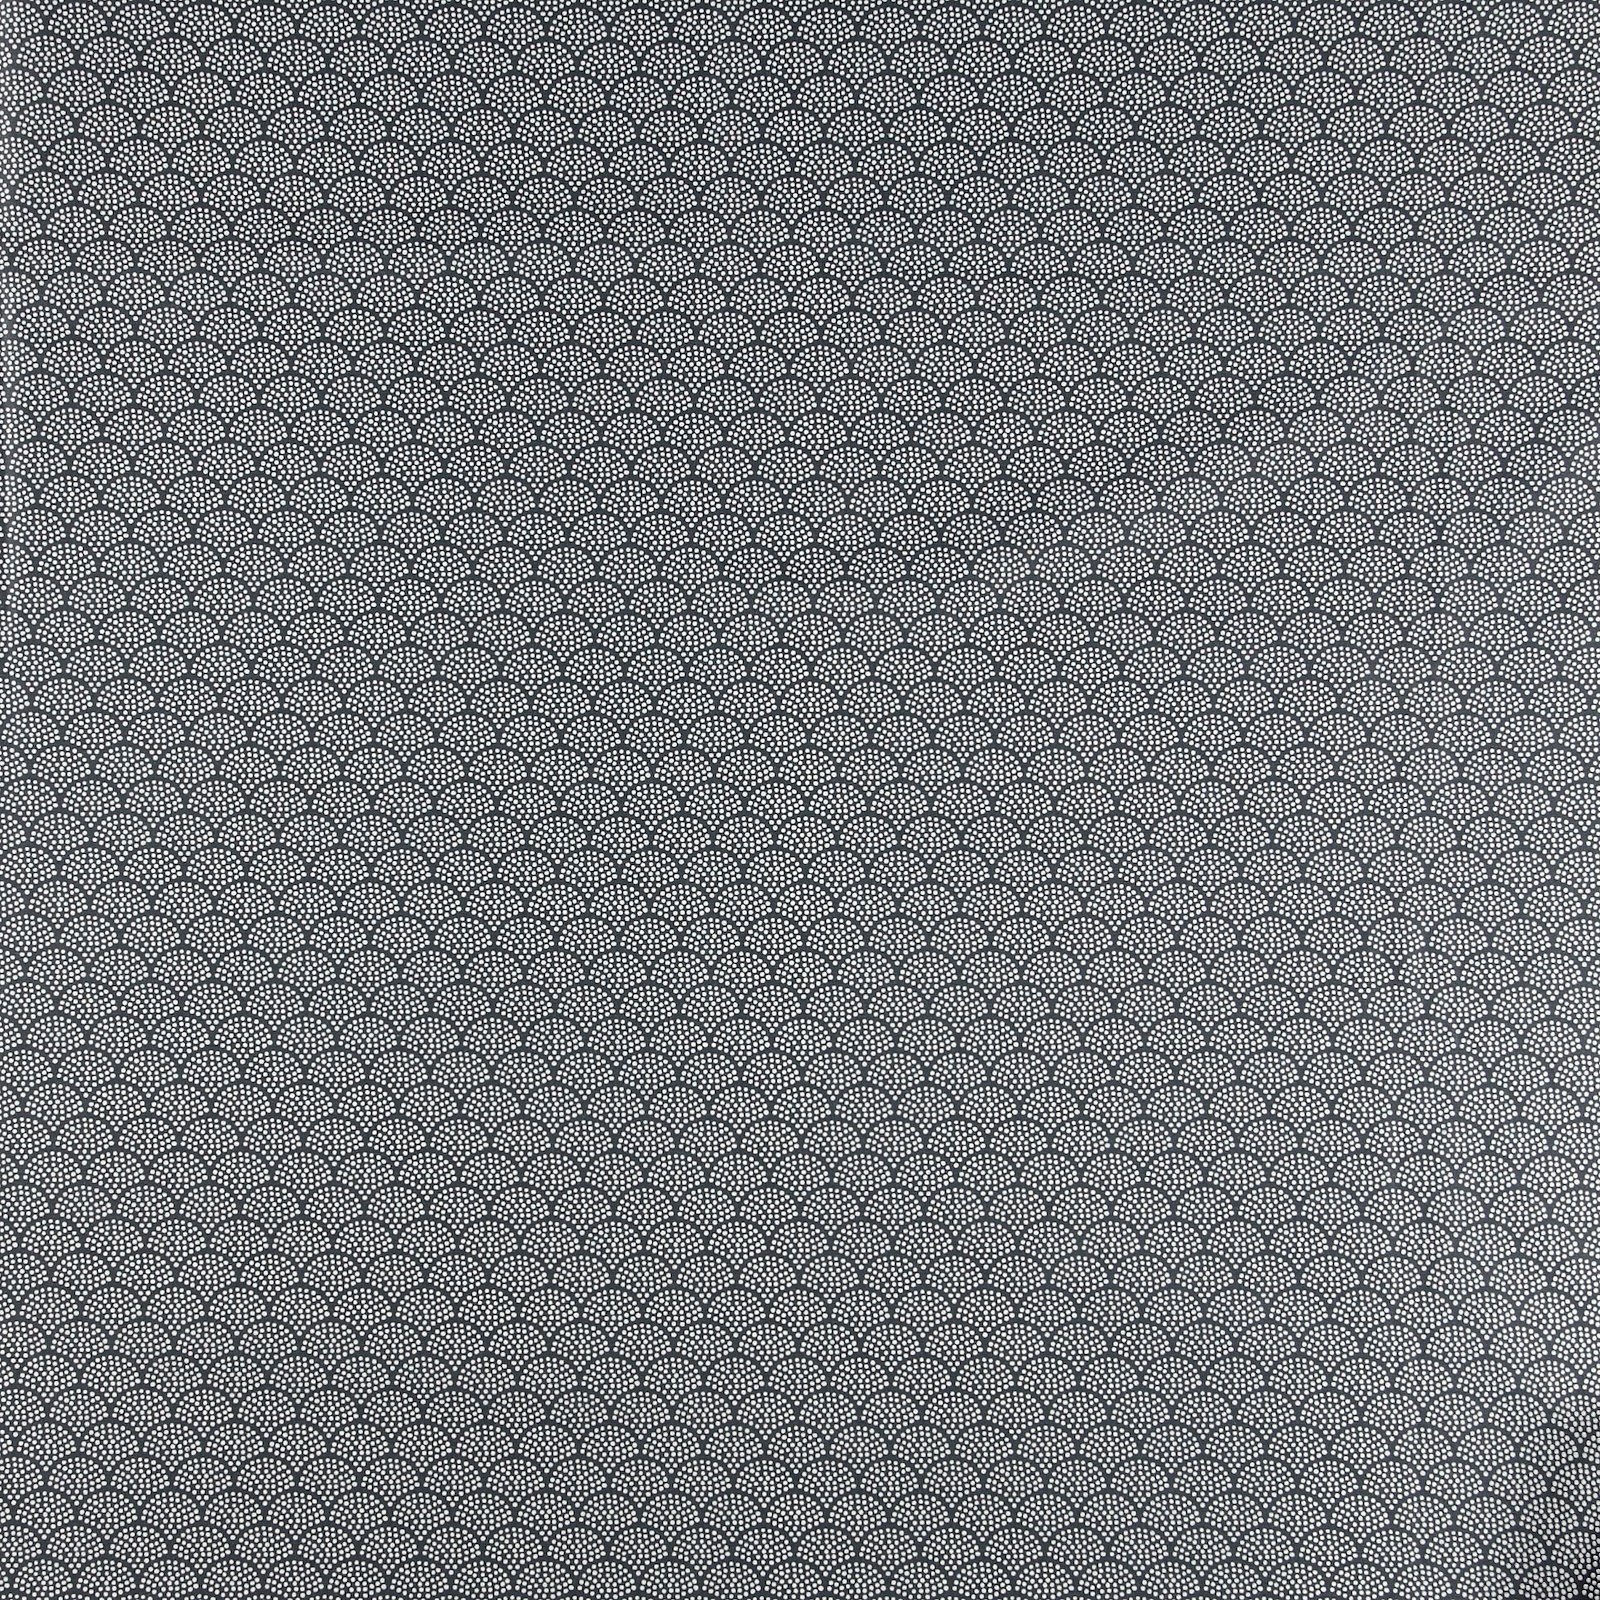 Textilwachstuch, grau/weiße Bögen 870344_pack_sp